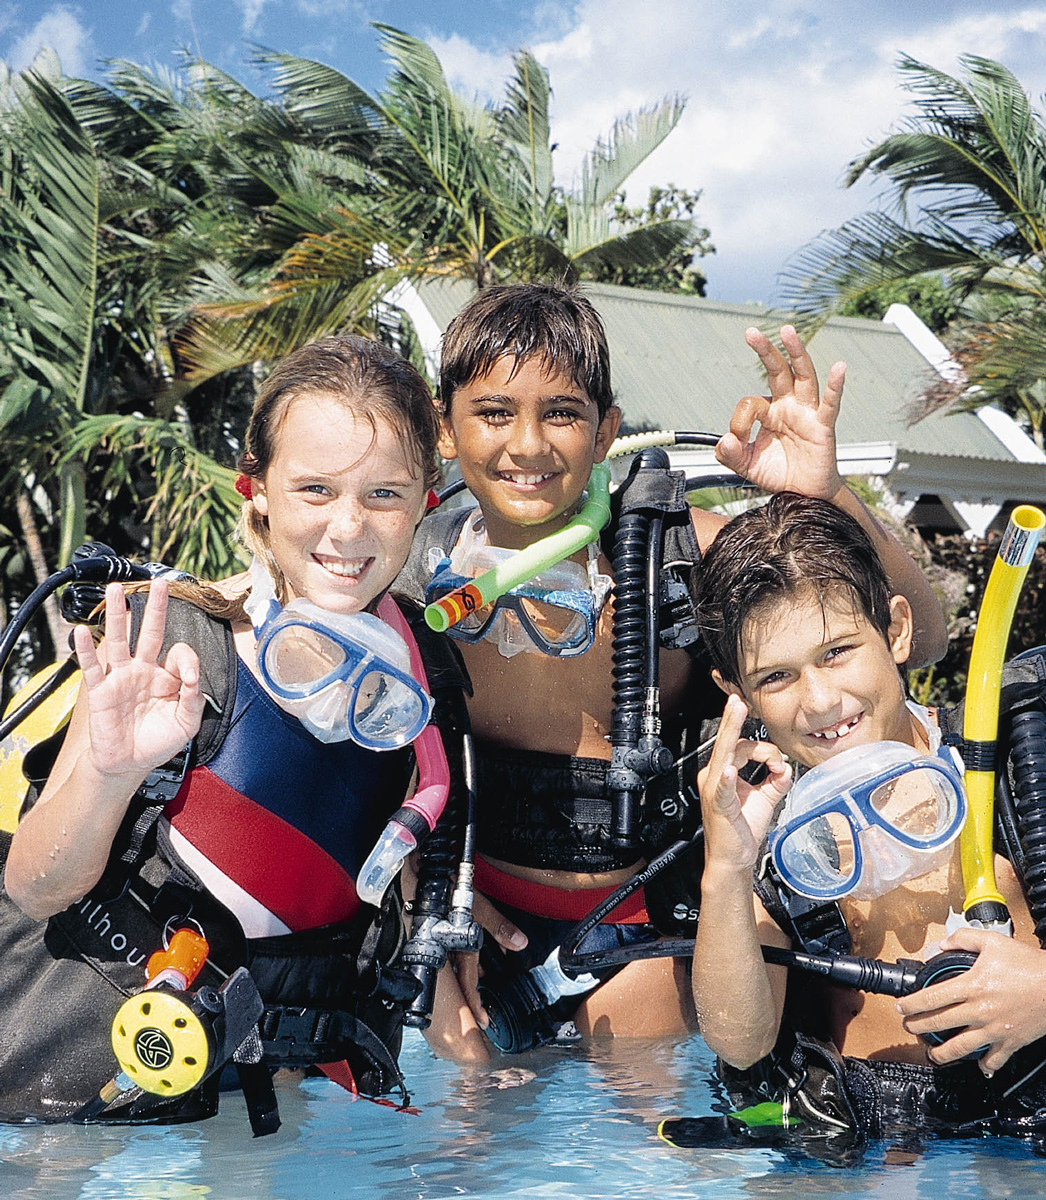 Scuba diving children